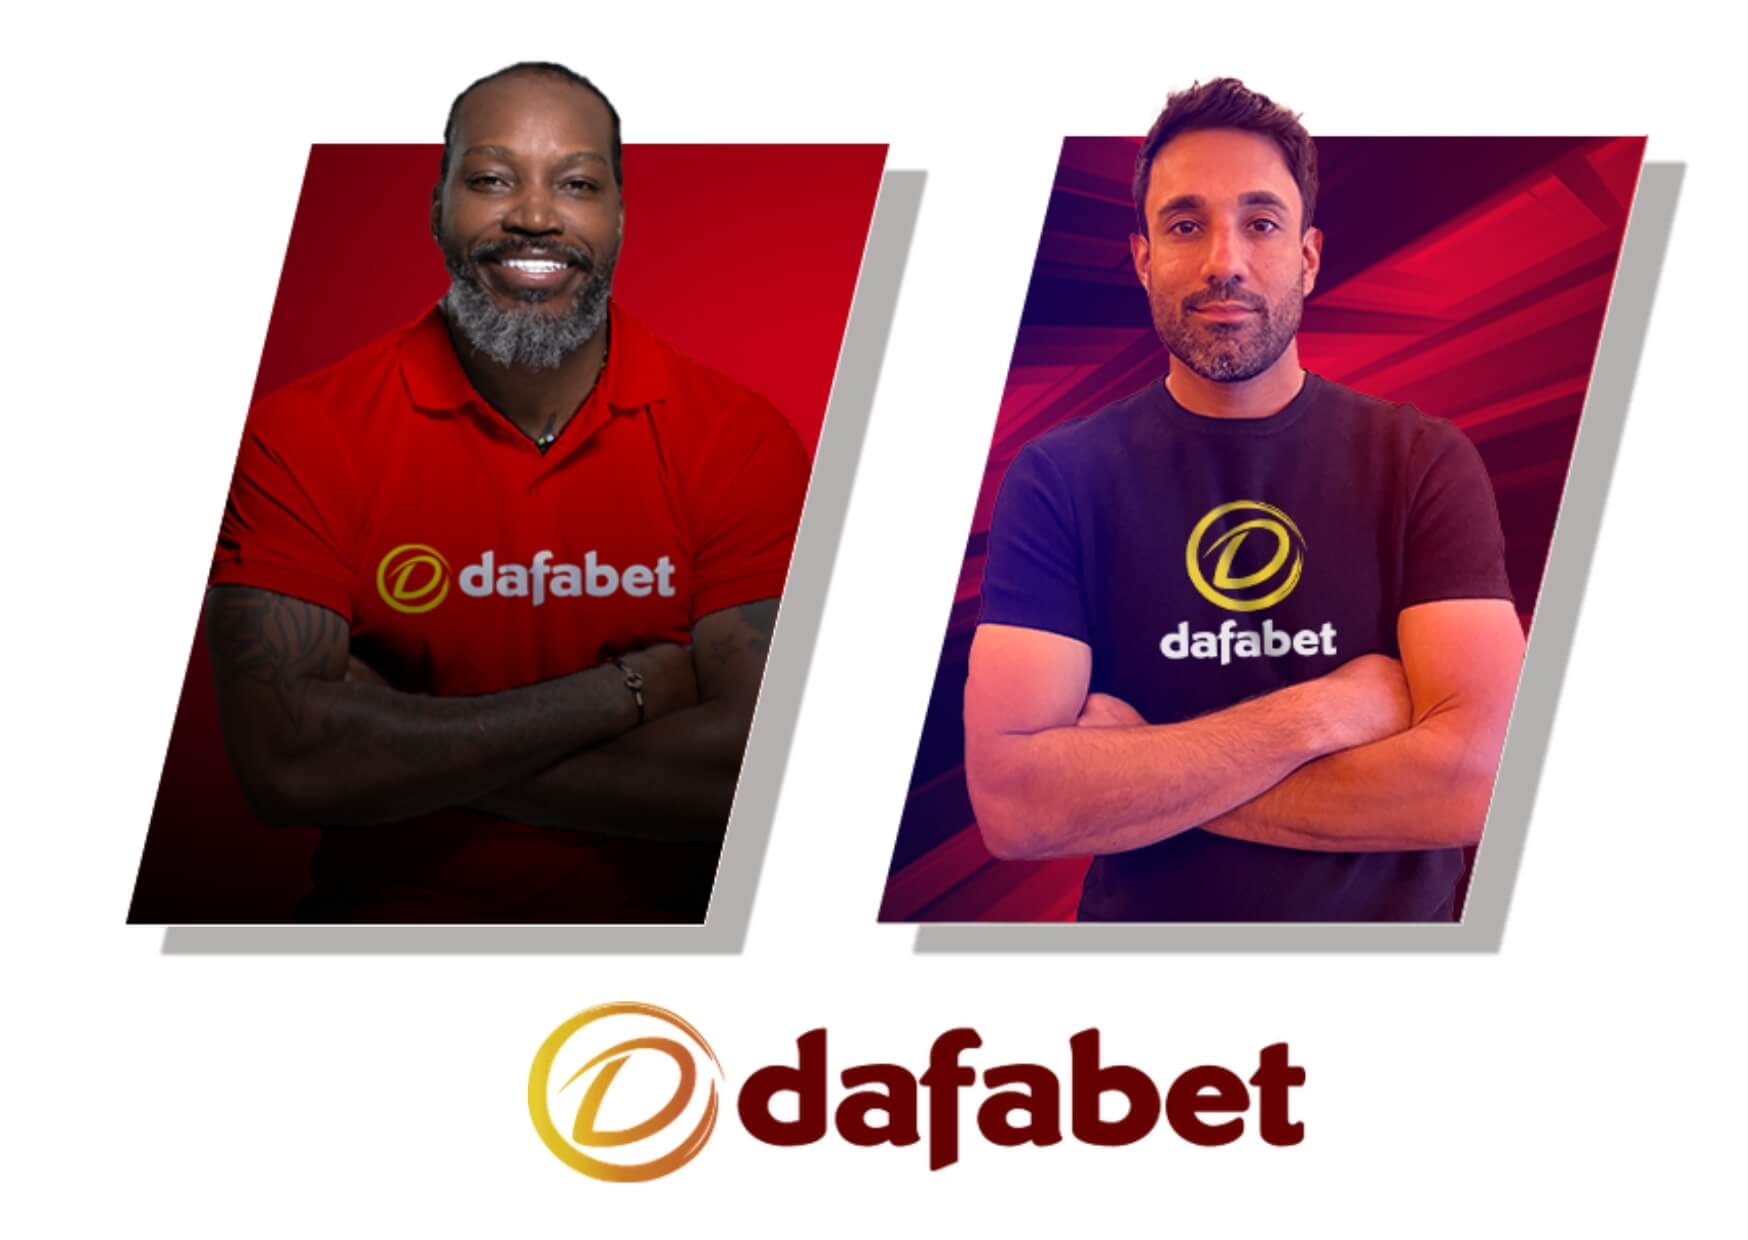 Dafabet đã thành công kết nối cùng nhiều đối tác với mục tiêu chung cùng phát triển